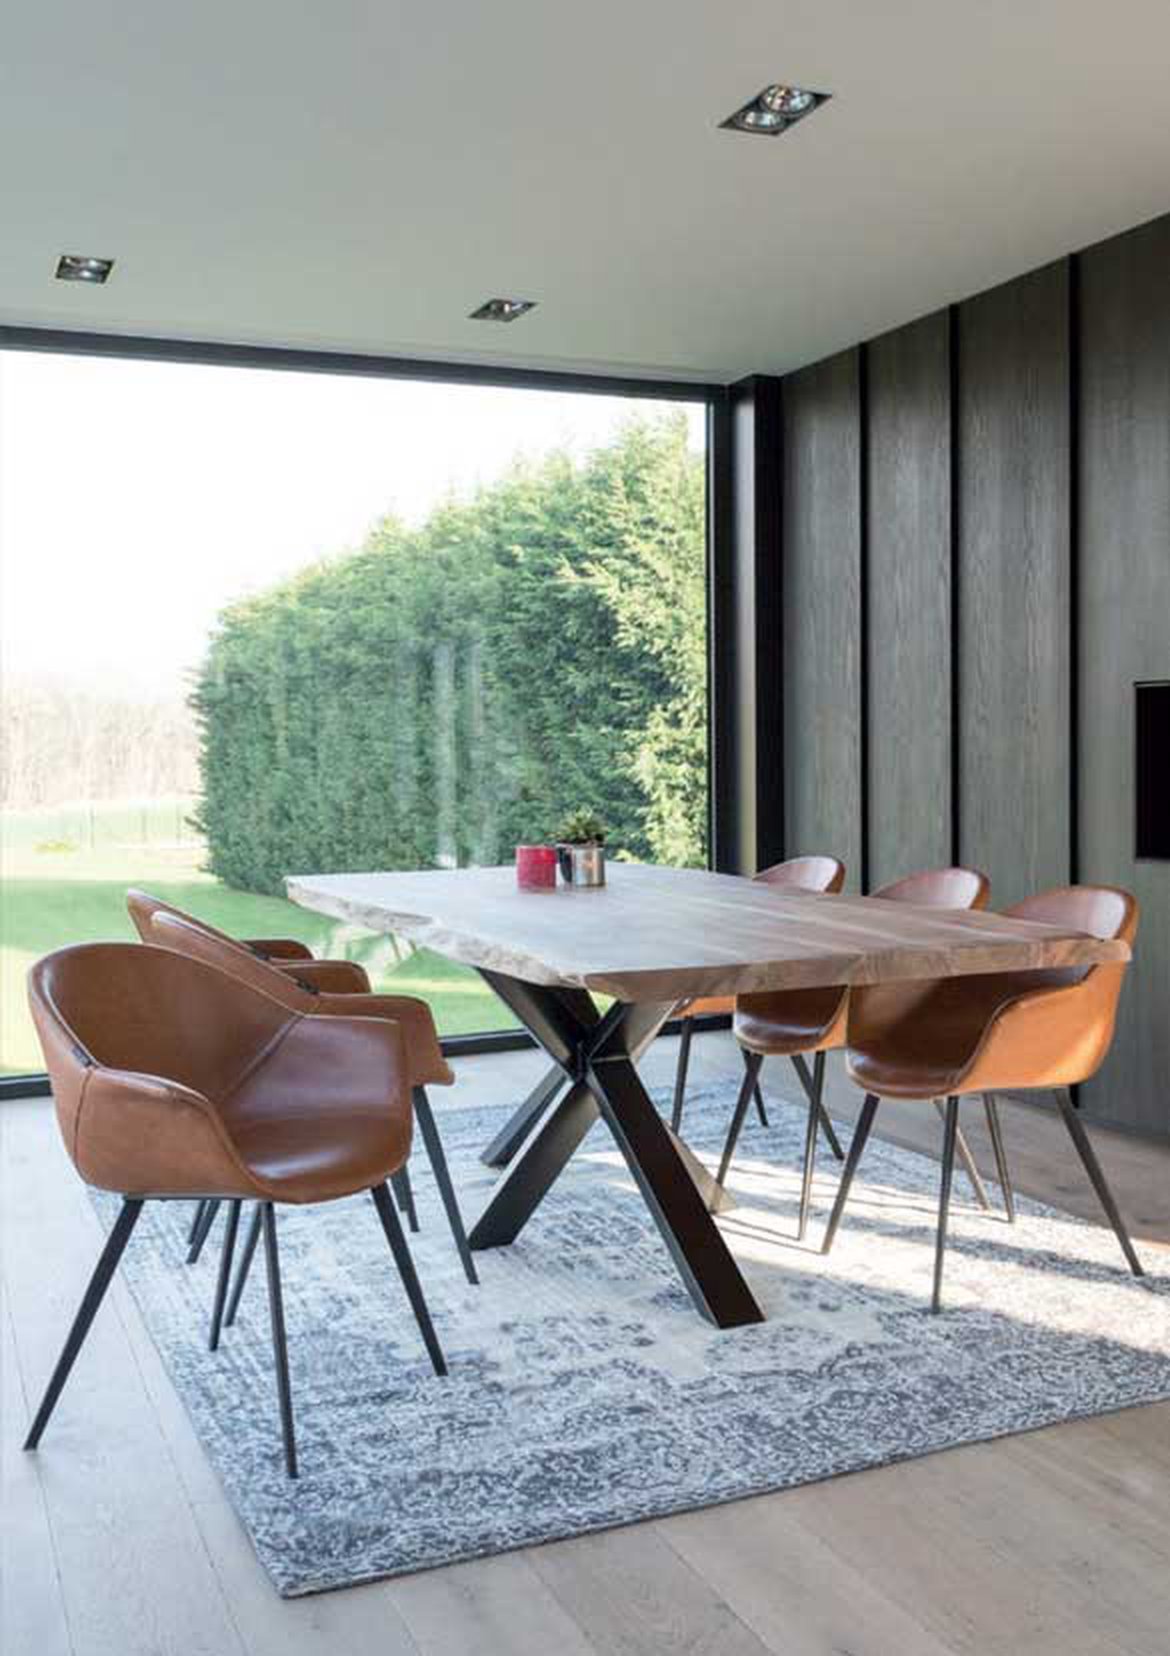 table en bois fauteuil cuir design 1170x0 q85 subsampling 2 upscale